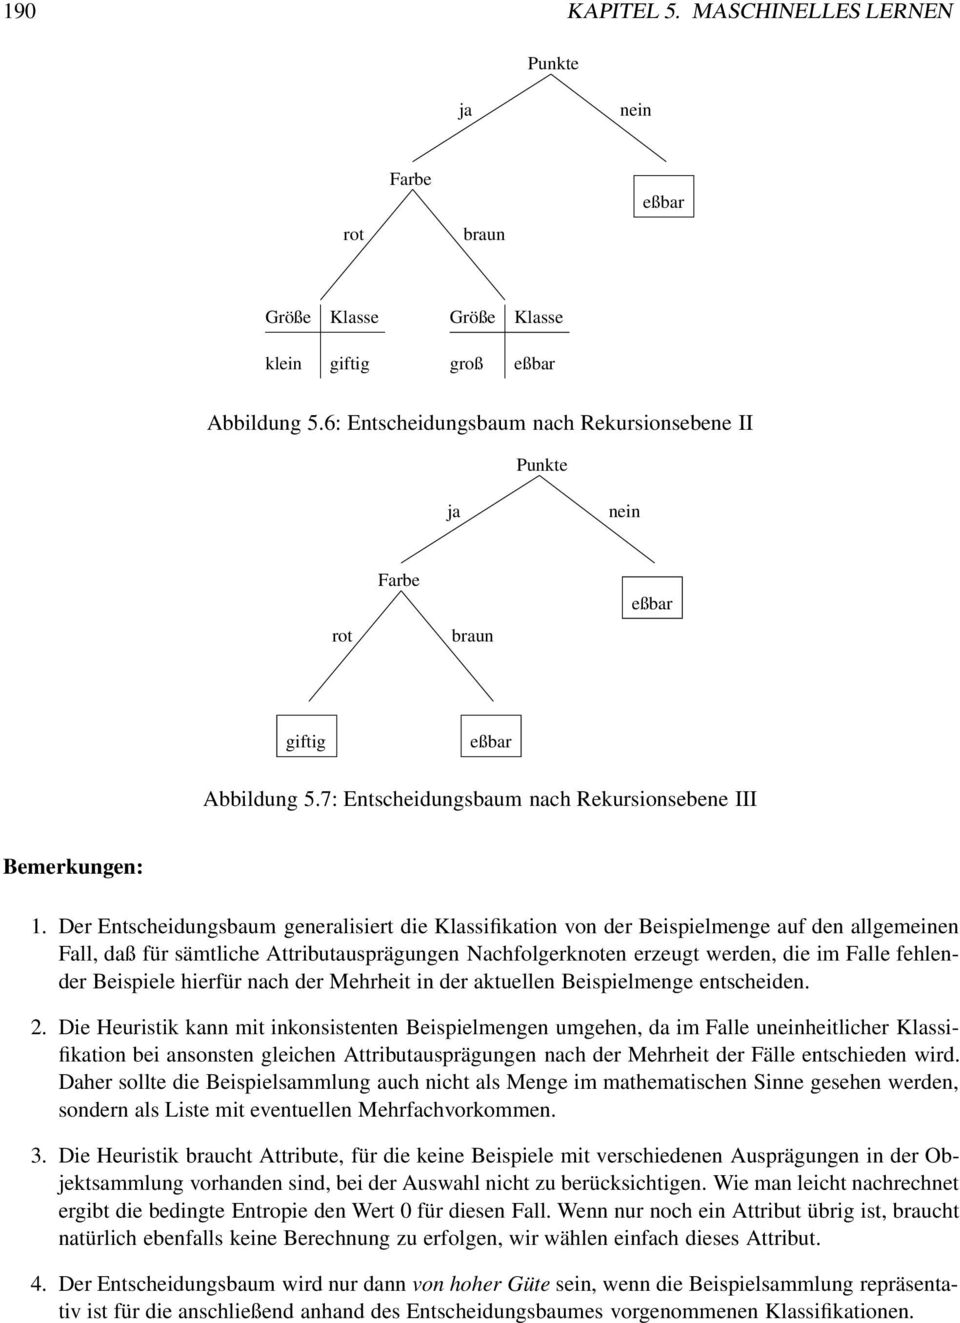 Der Entscheidungsbaum generalisiert die Klassifikation von der Beispielmenge auf den allgemeinen Fall, daß für sämtliche Attributausprägungen Nachfolgerknoten erzeugt werden, die im Falle fehlender